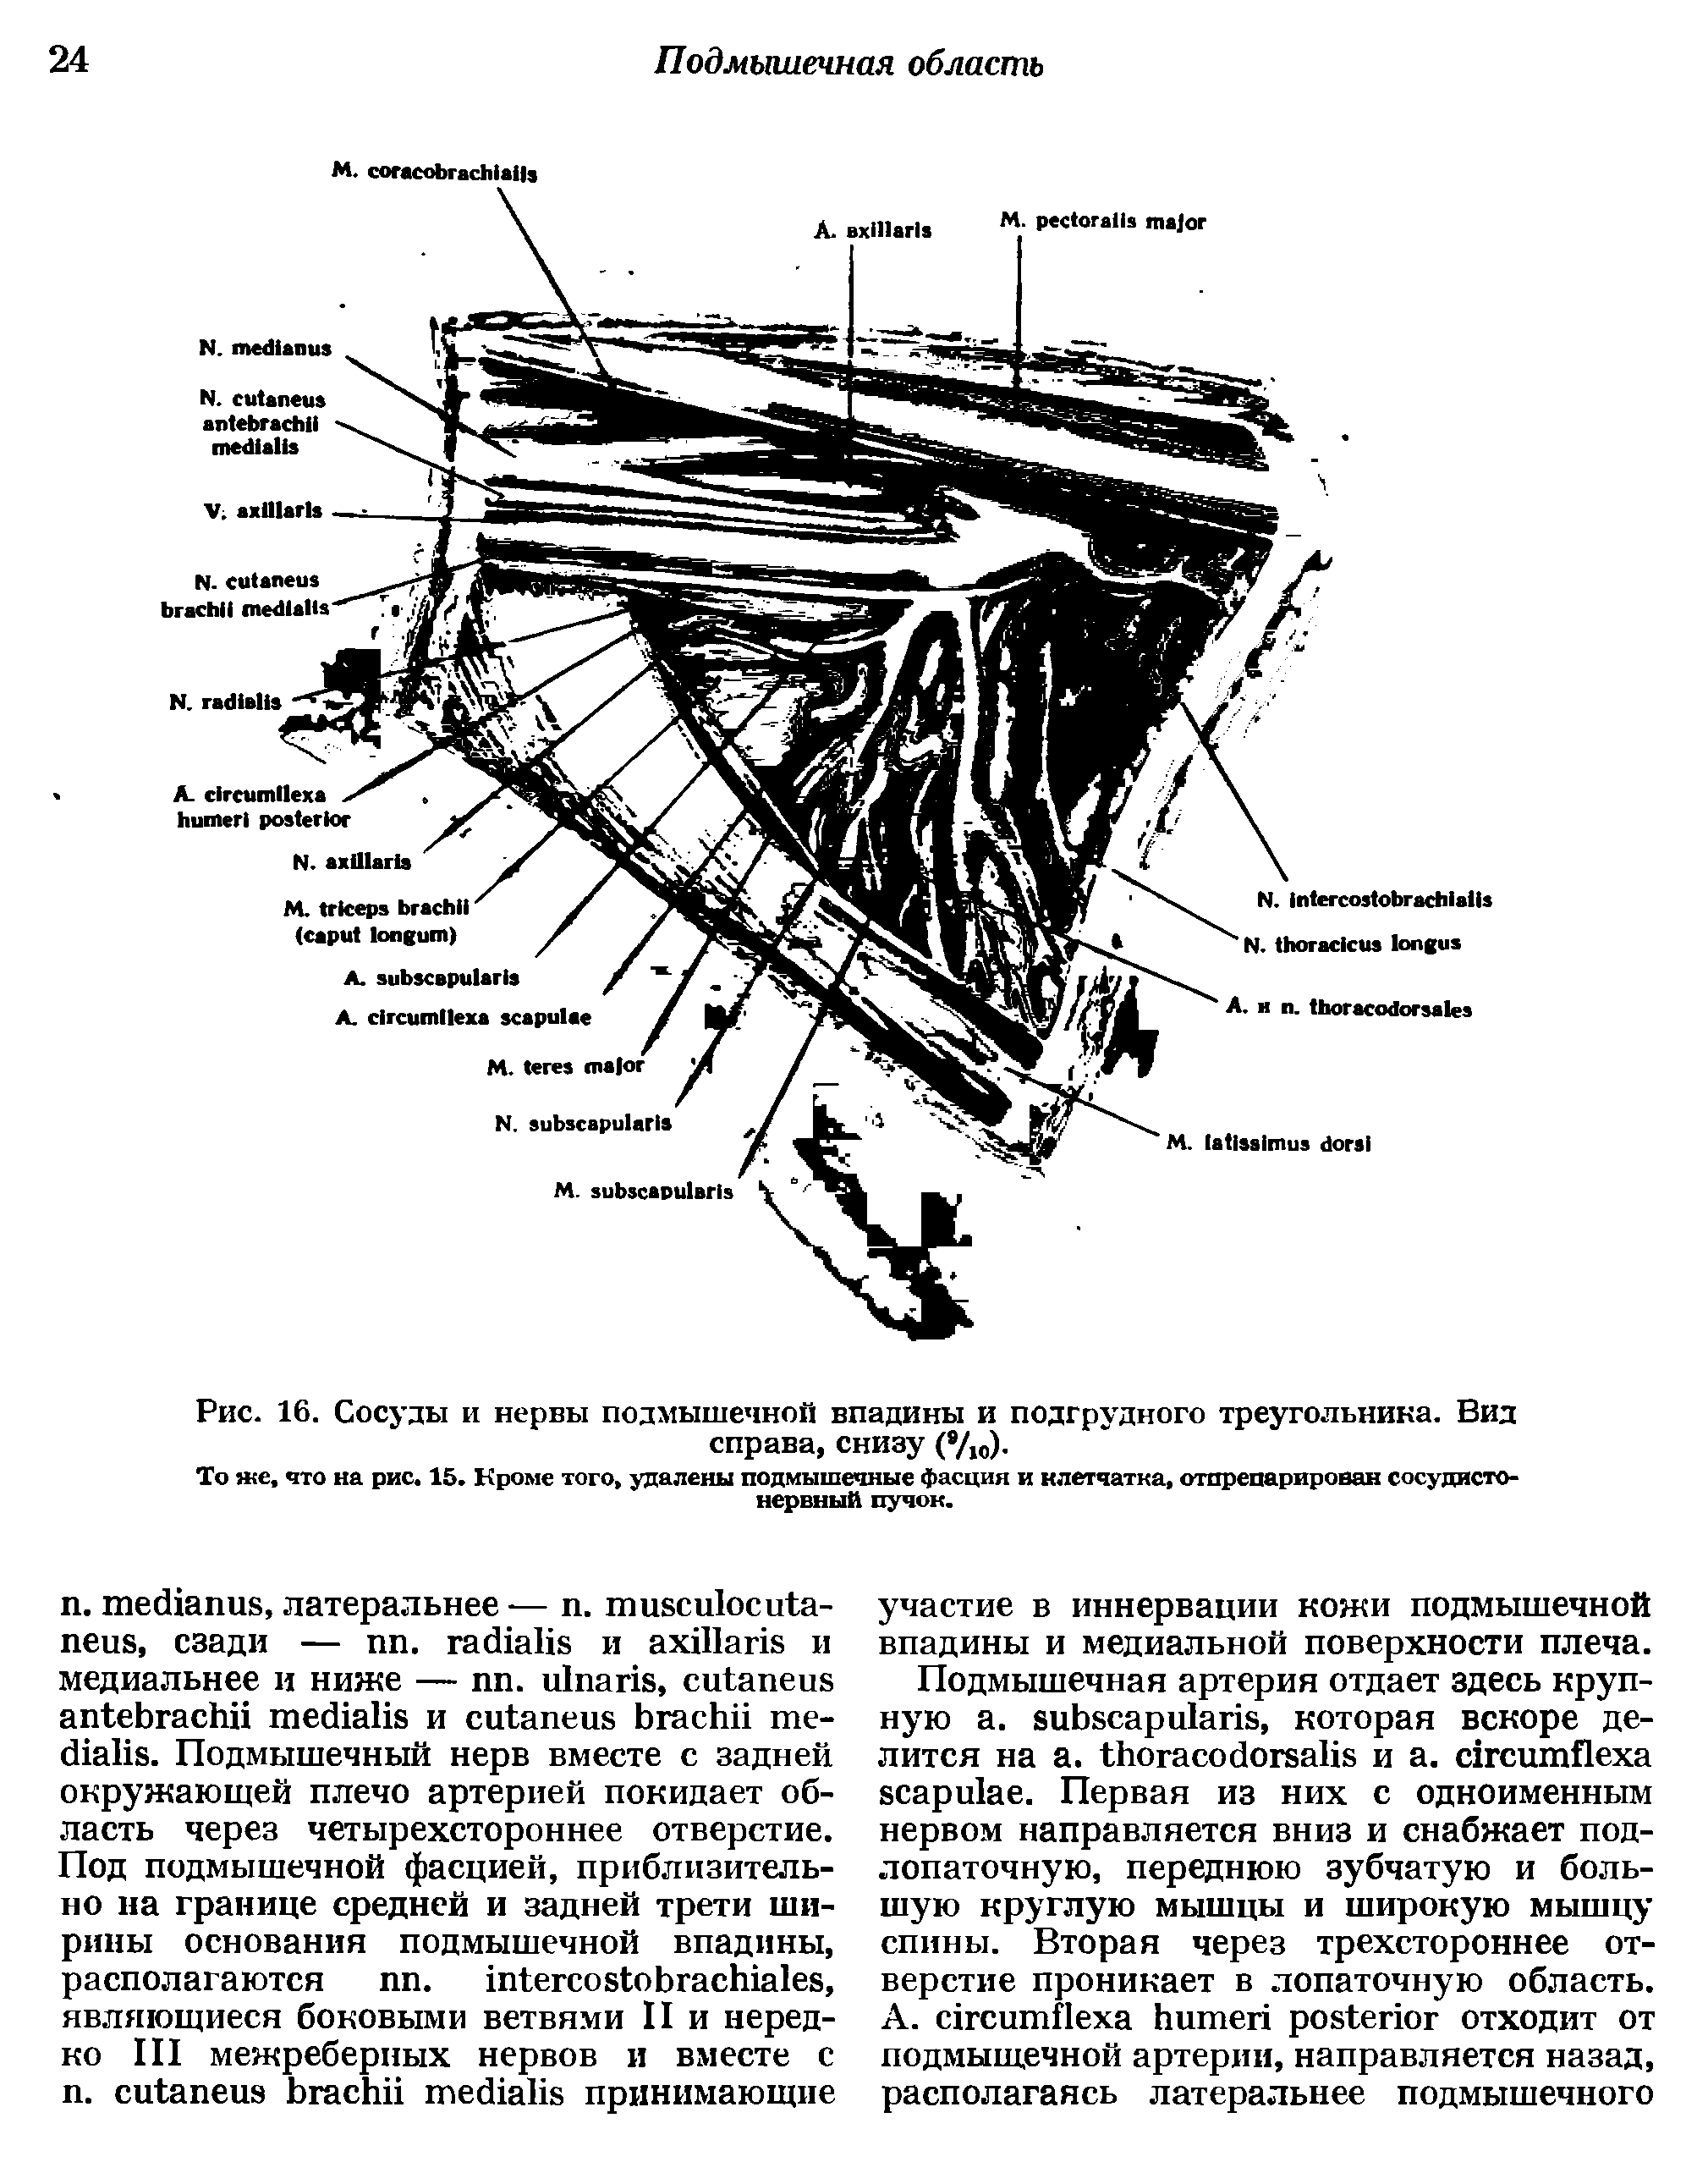 Рис. 16. Сосуды и нервы подмышечной впадины и подгрудного треугольника. Вид справа, снизу (8/10).